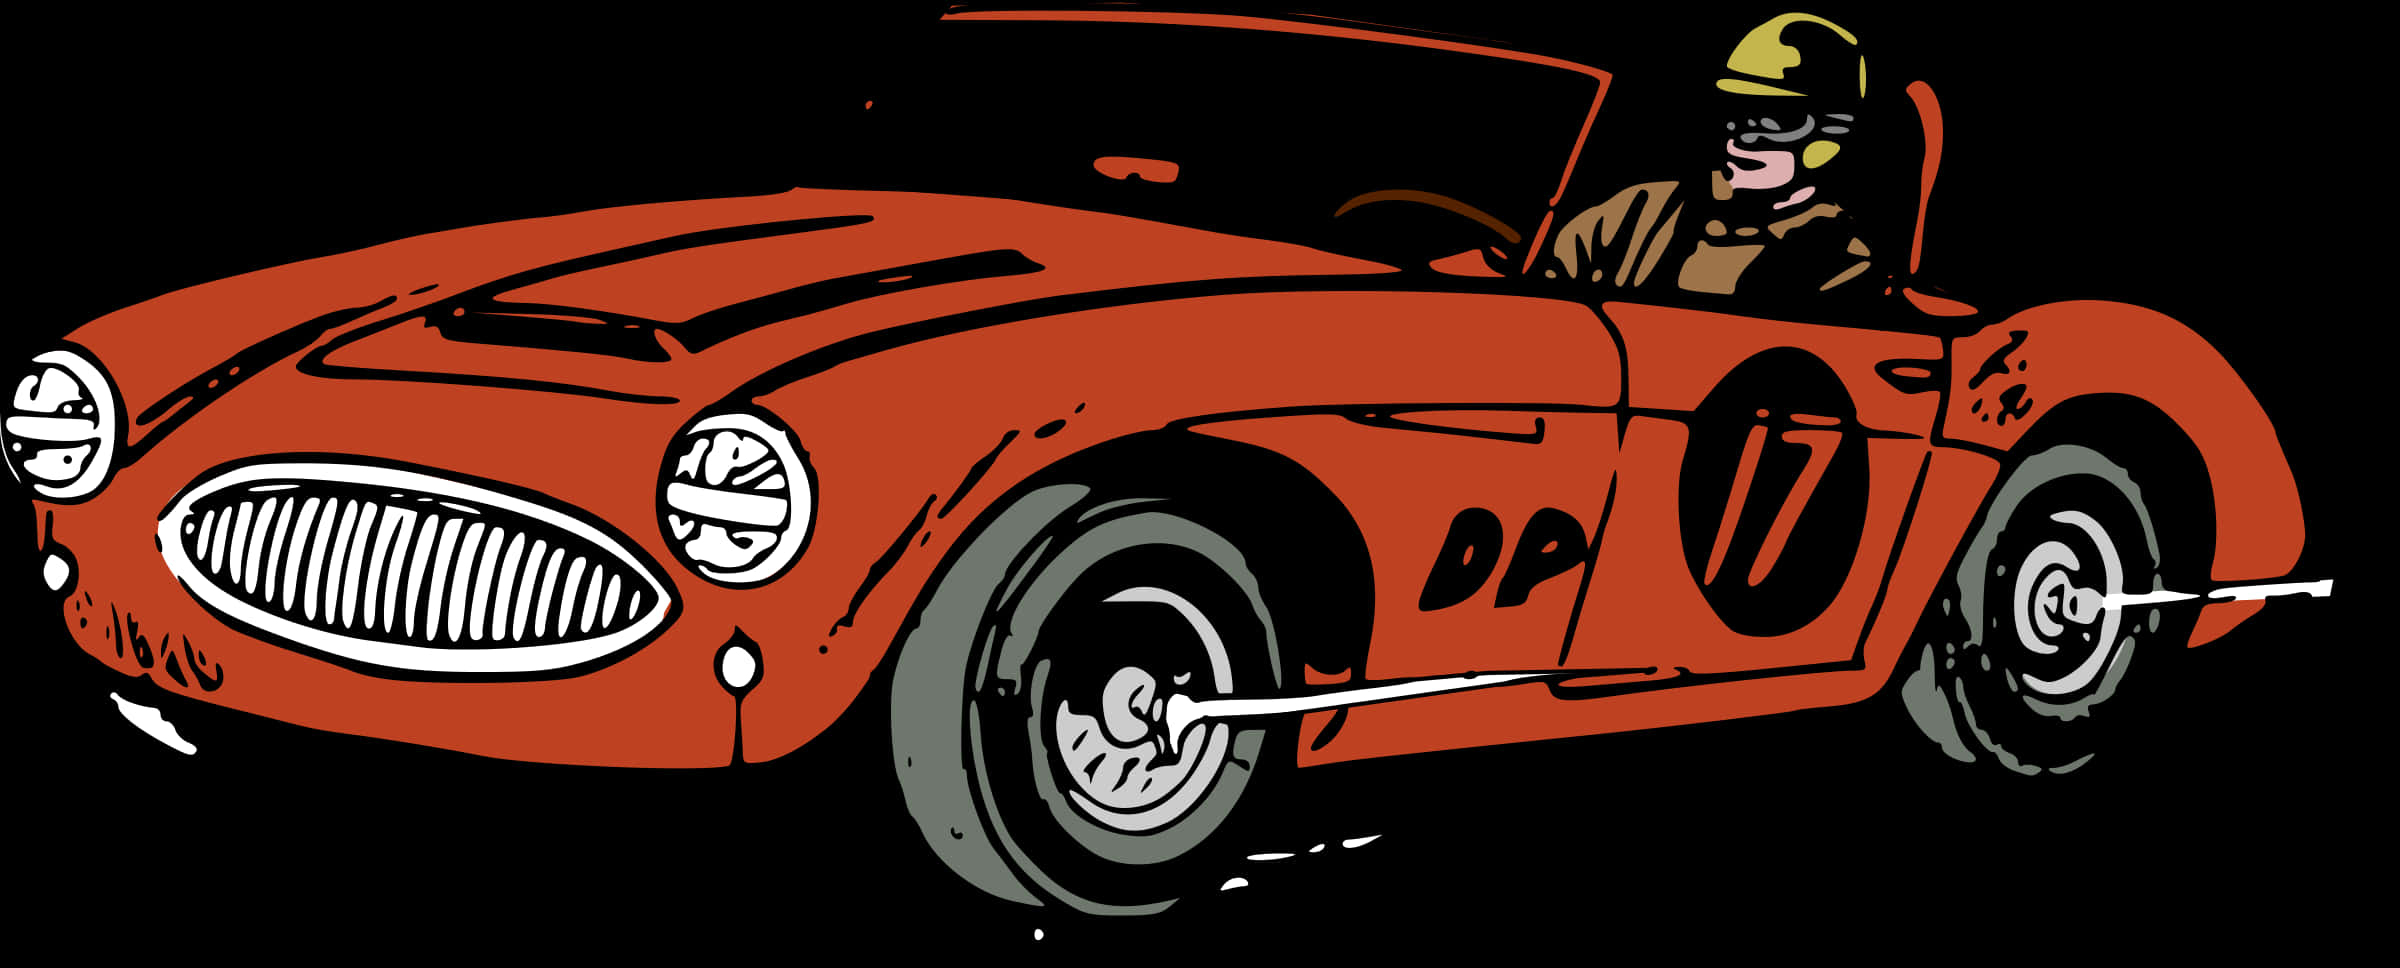 Vintage Race Car Driver Illustration PNG image